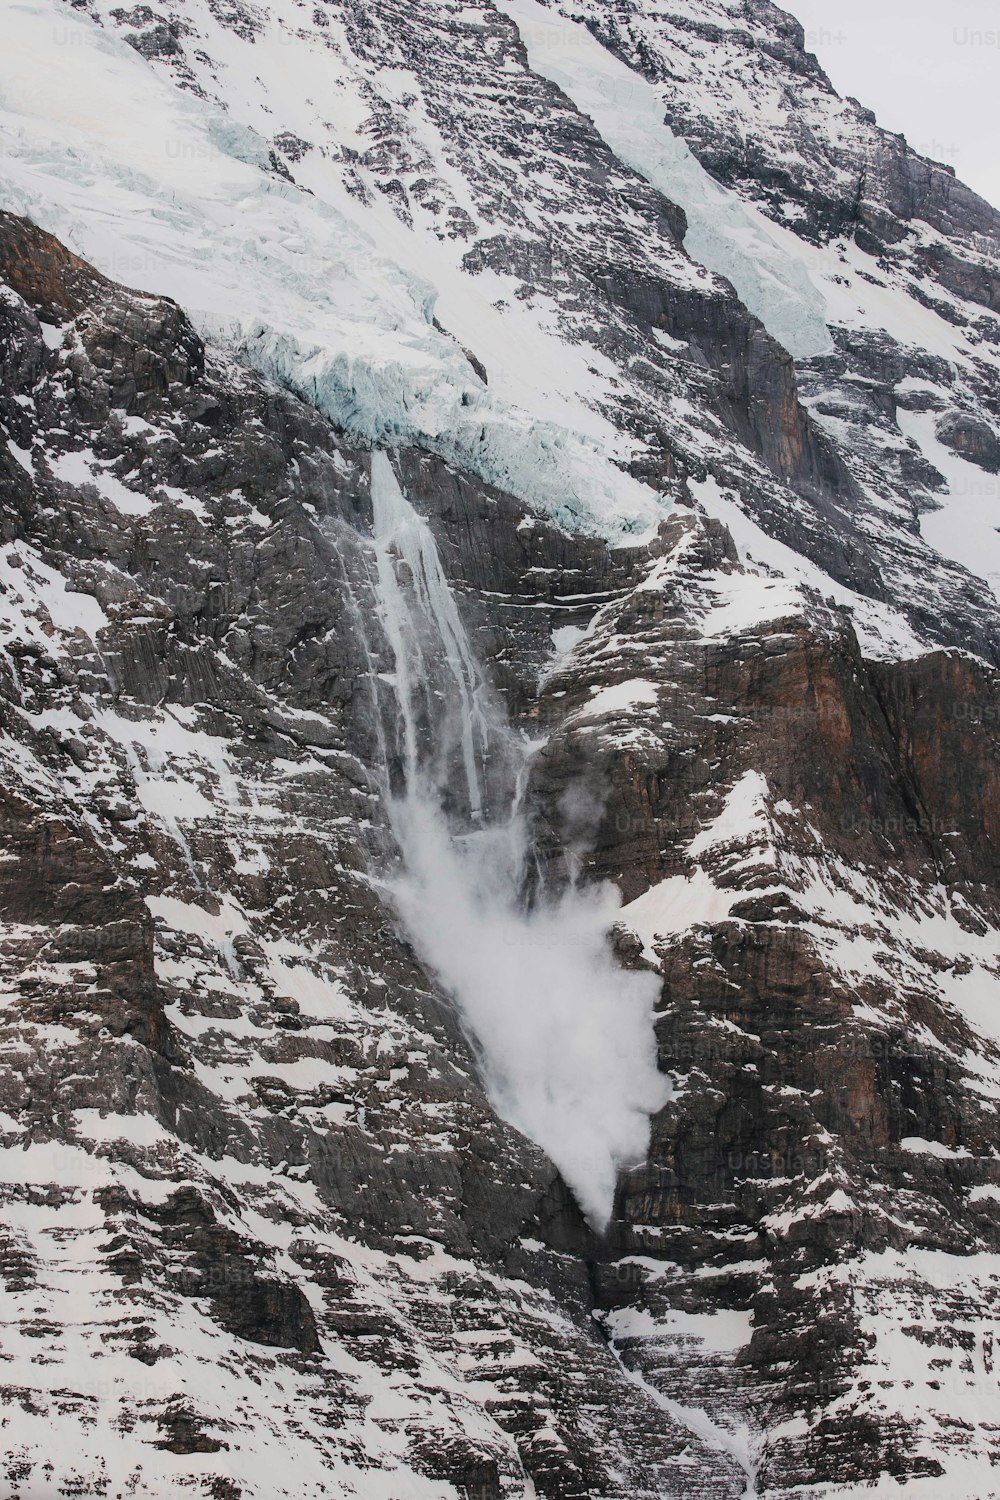 uma montanha coberta de neve com uma cachoeira saindo dela